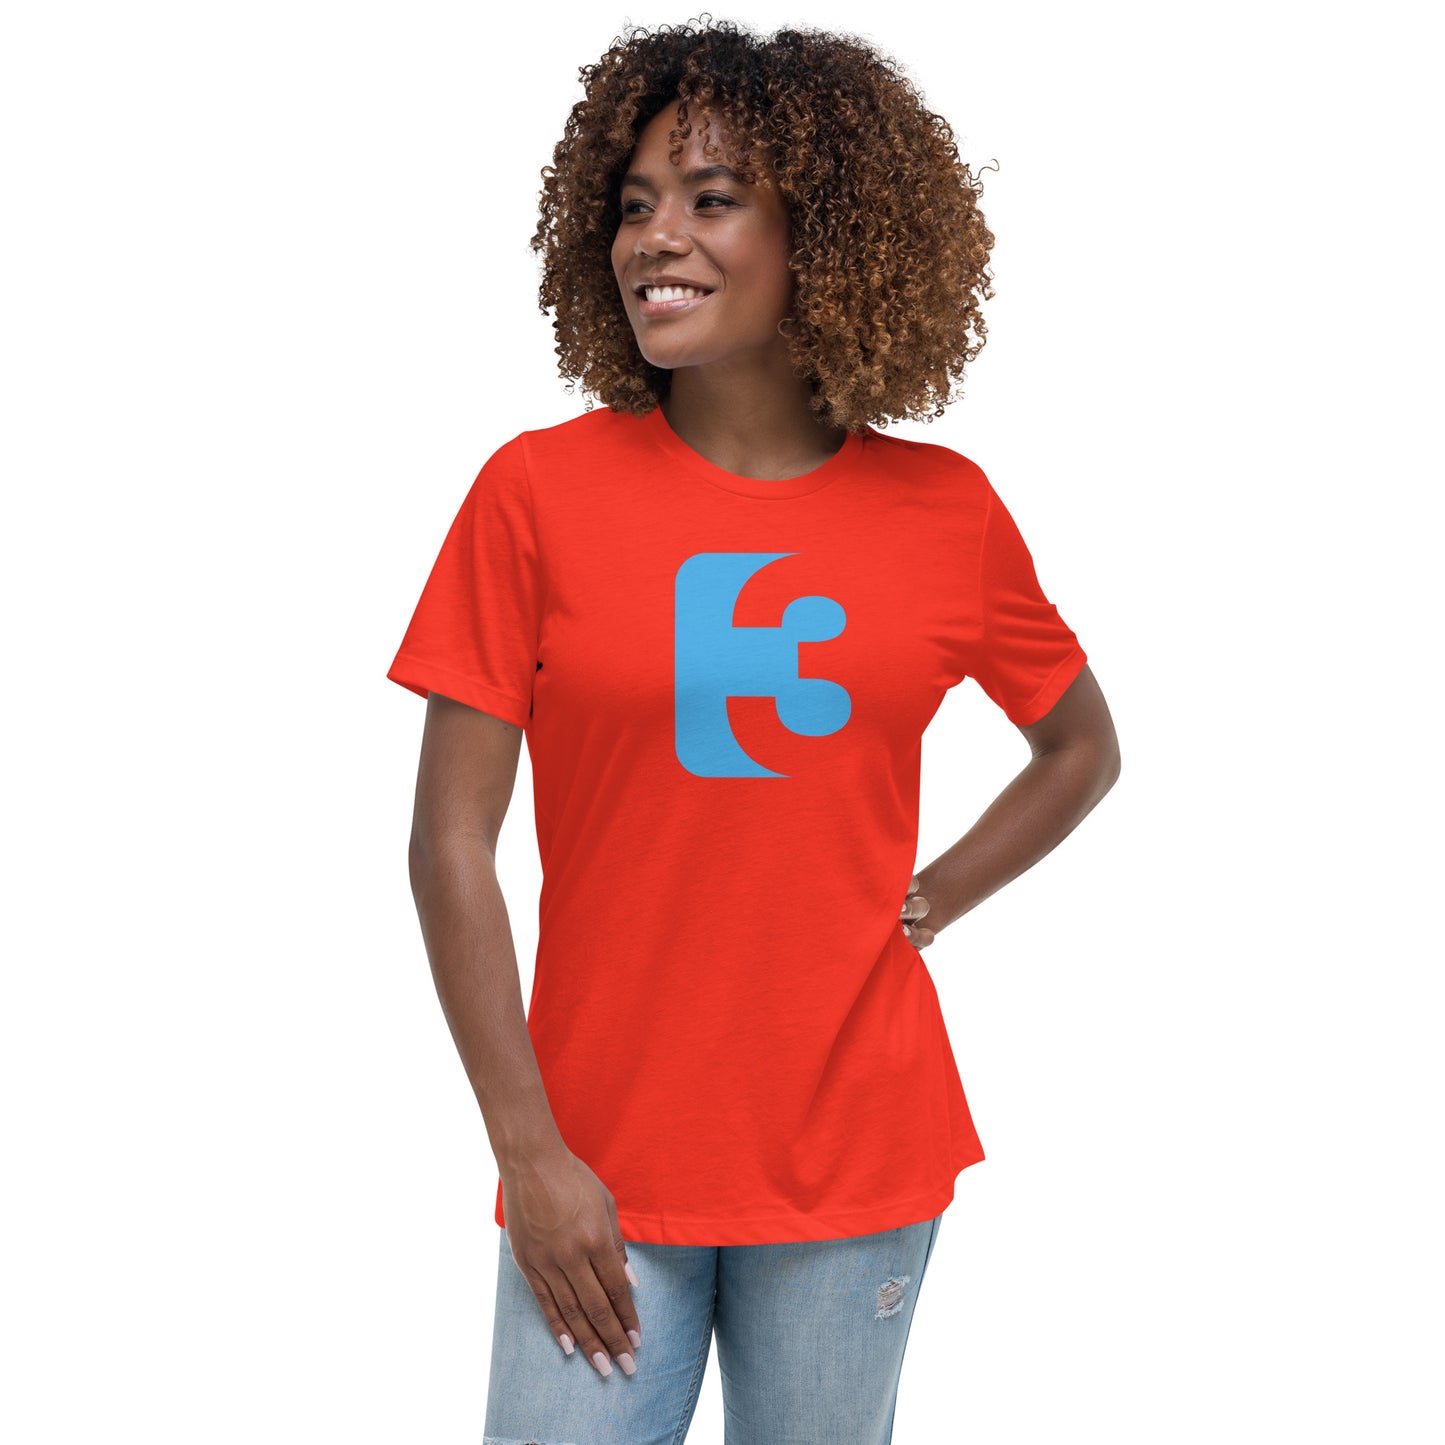 #3 Women's Relaxed T-Shirt